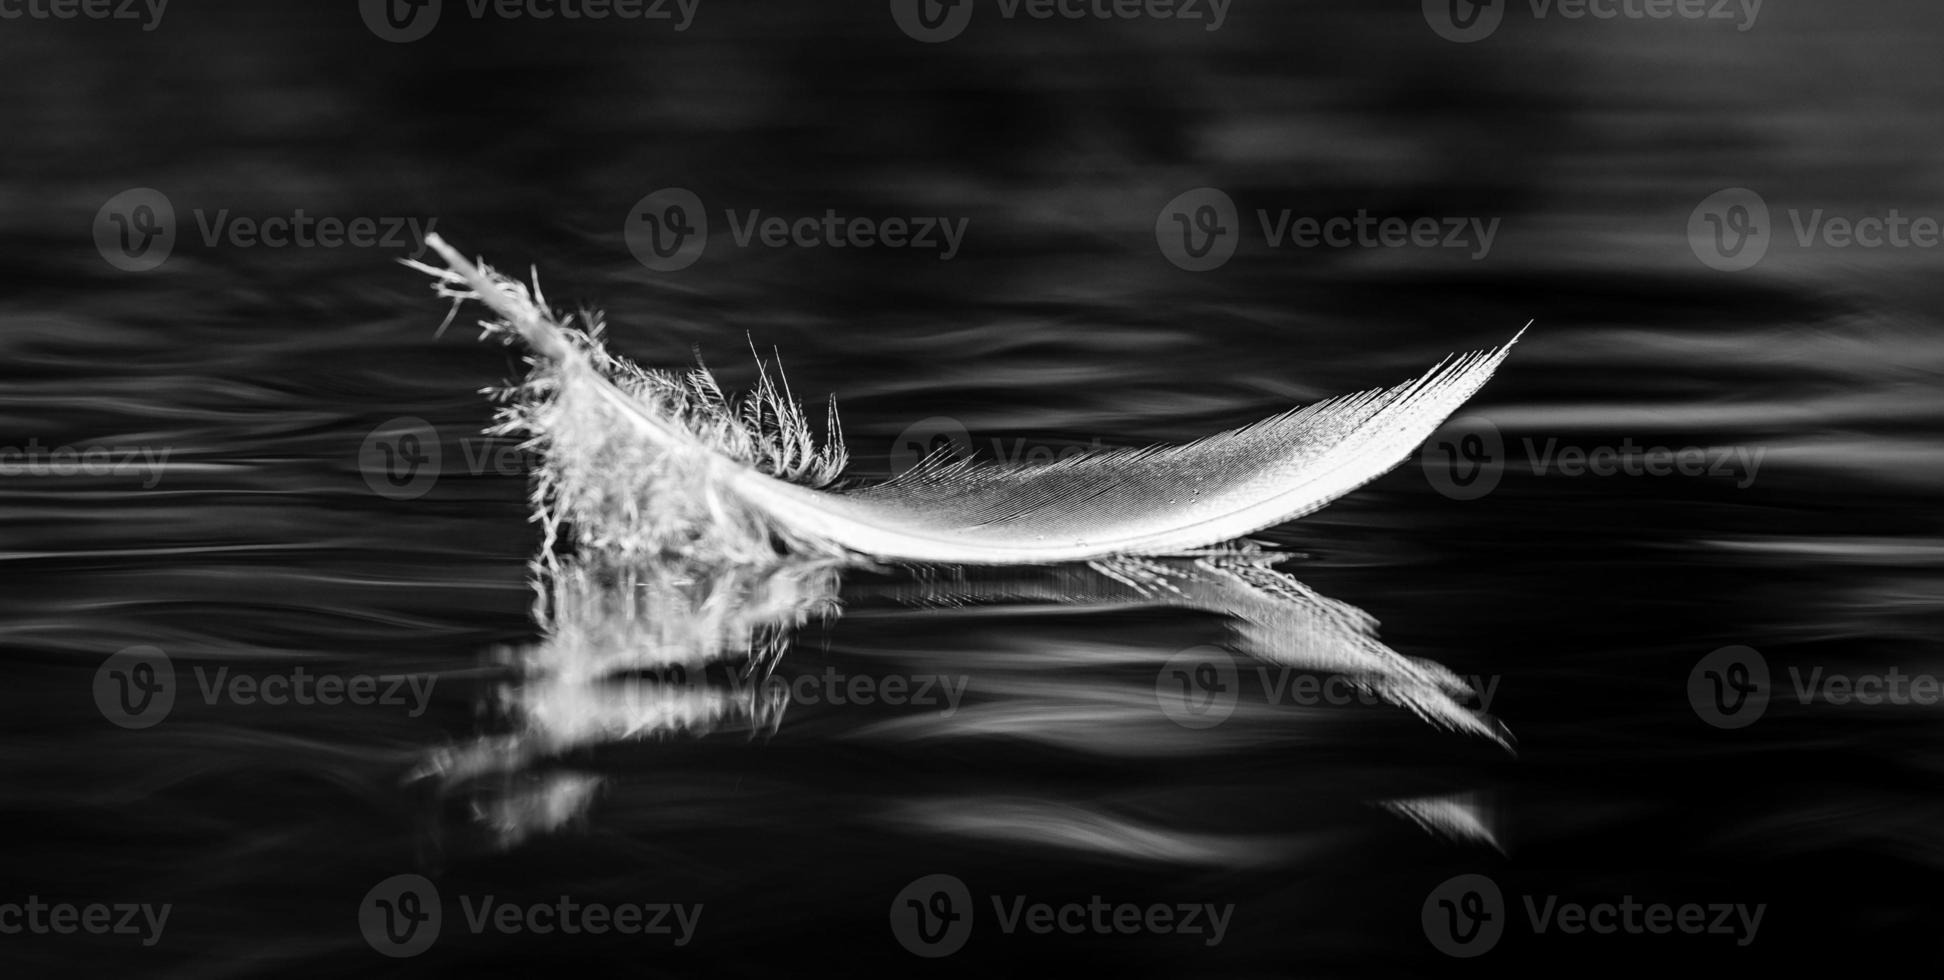 fågel fjäder i svart och vit foto